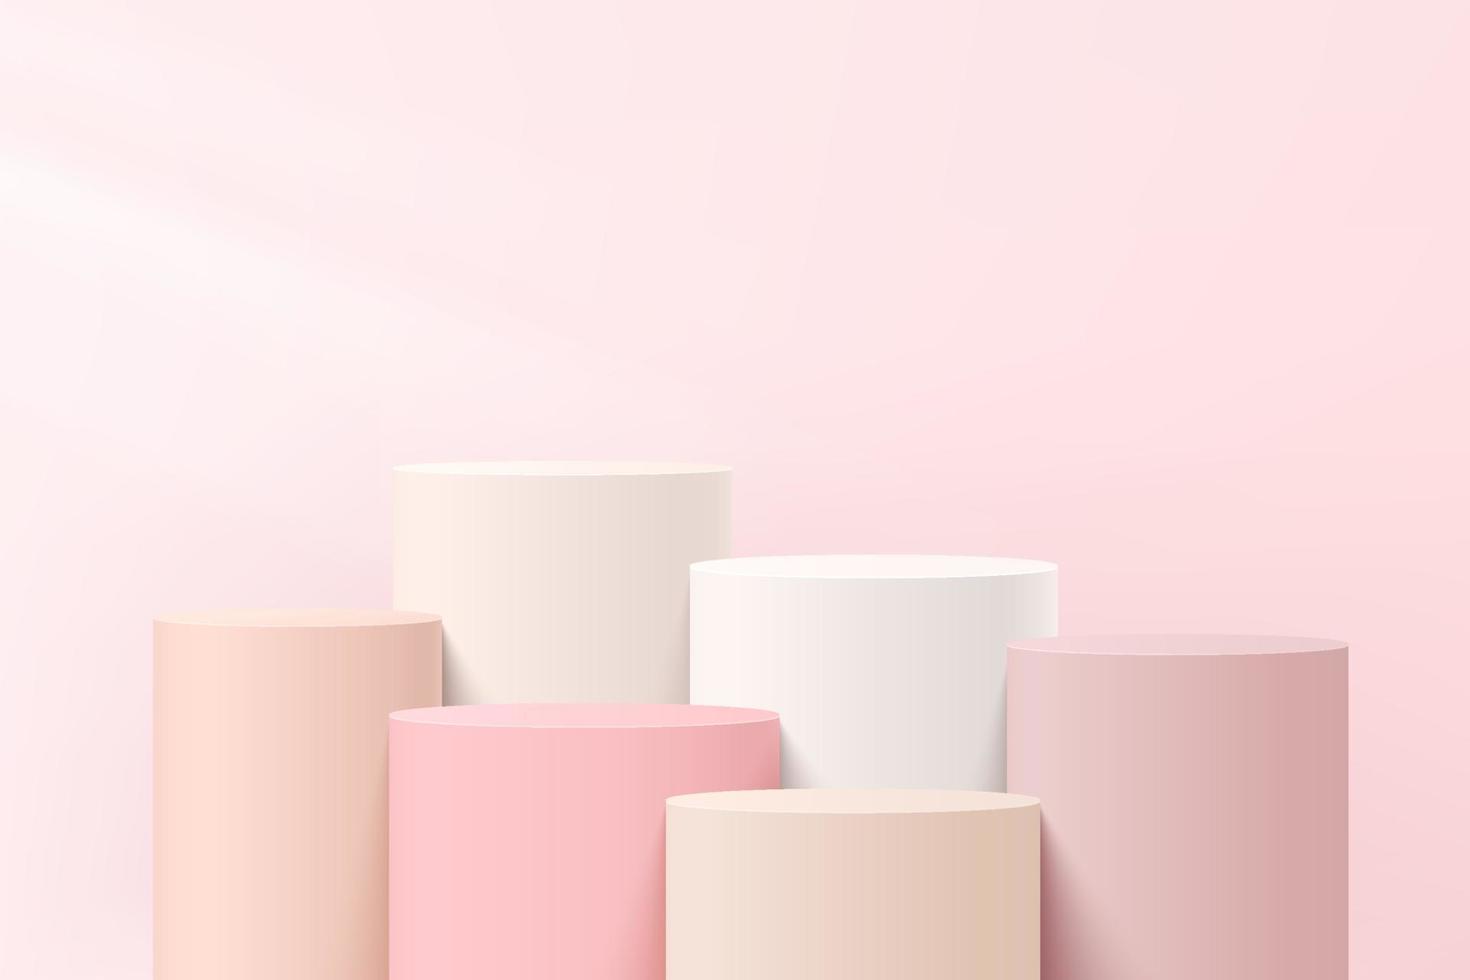 piedistallo cilindrico astratto bianco e rosa 3d o podio con parete rosa pastello per la presentazione di prodotti cosmetici. progettazione della piattaforma di rendering geometrico vettoriale. vettore eps10.